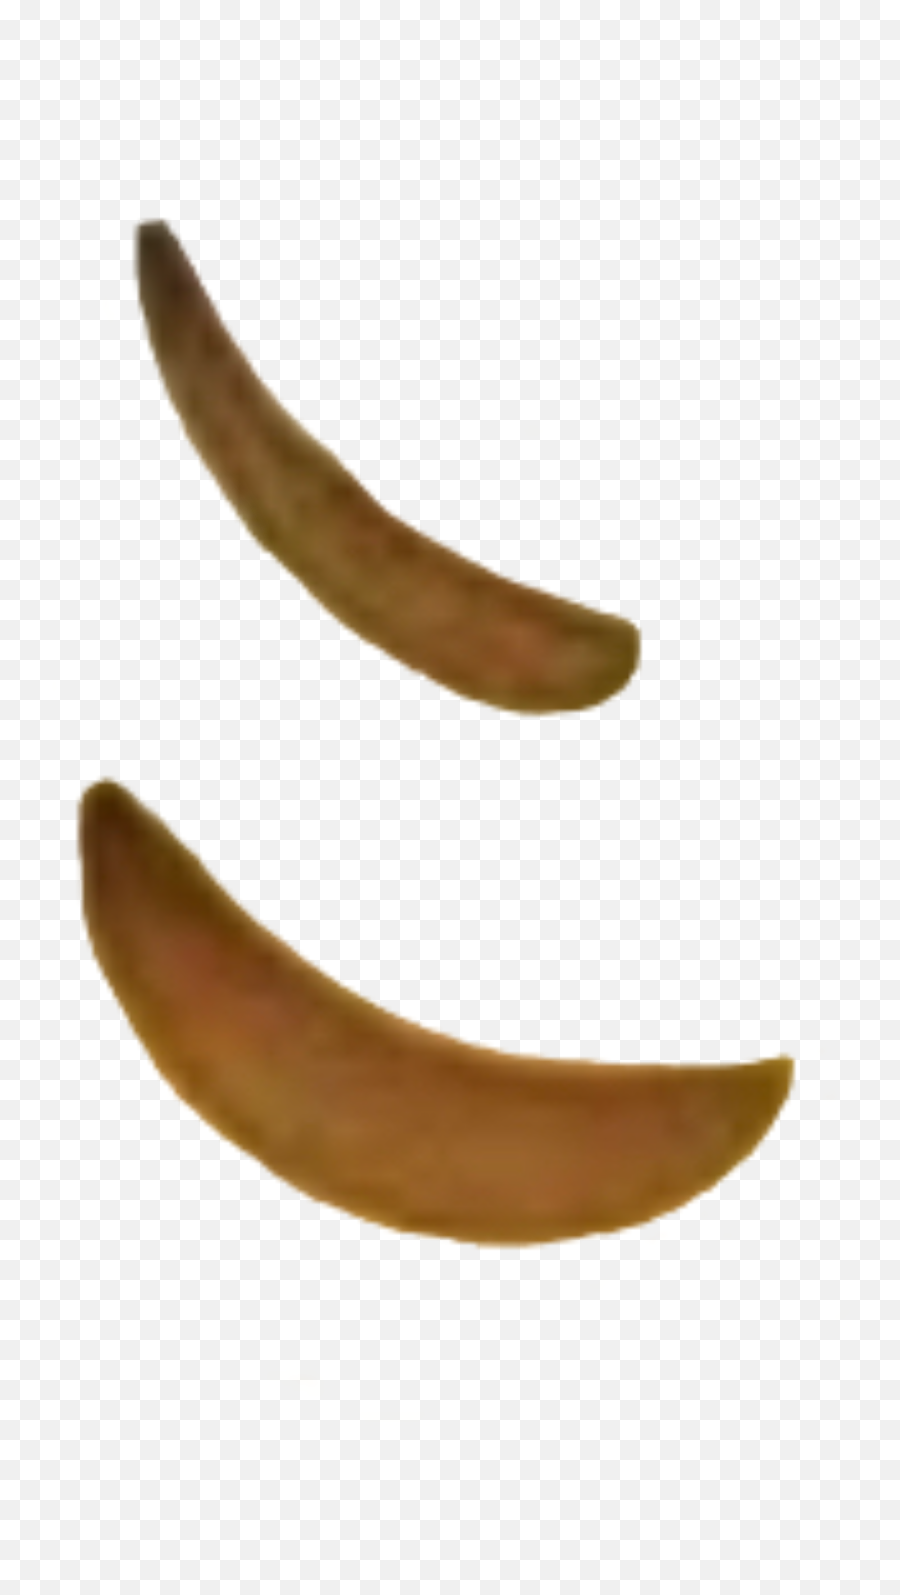 The Most Edited Piss Picsart - Ripe Banana Emoji,Kantai Emoticon Vector